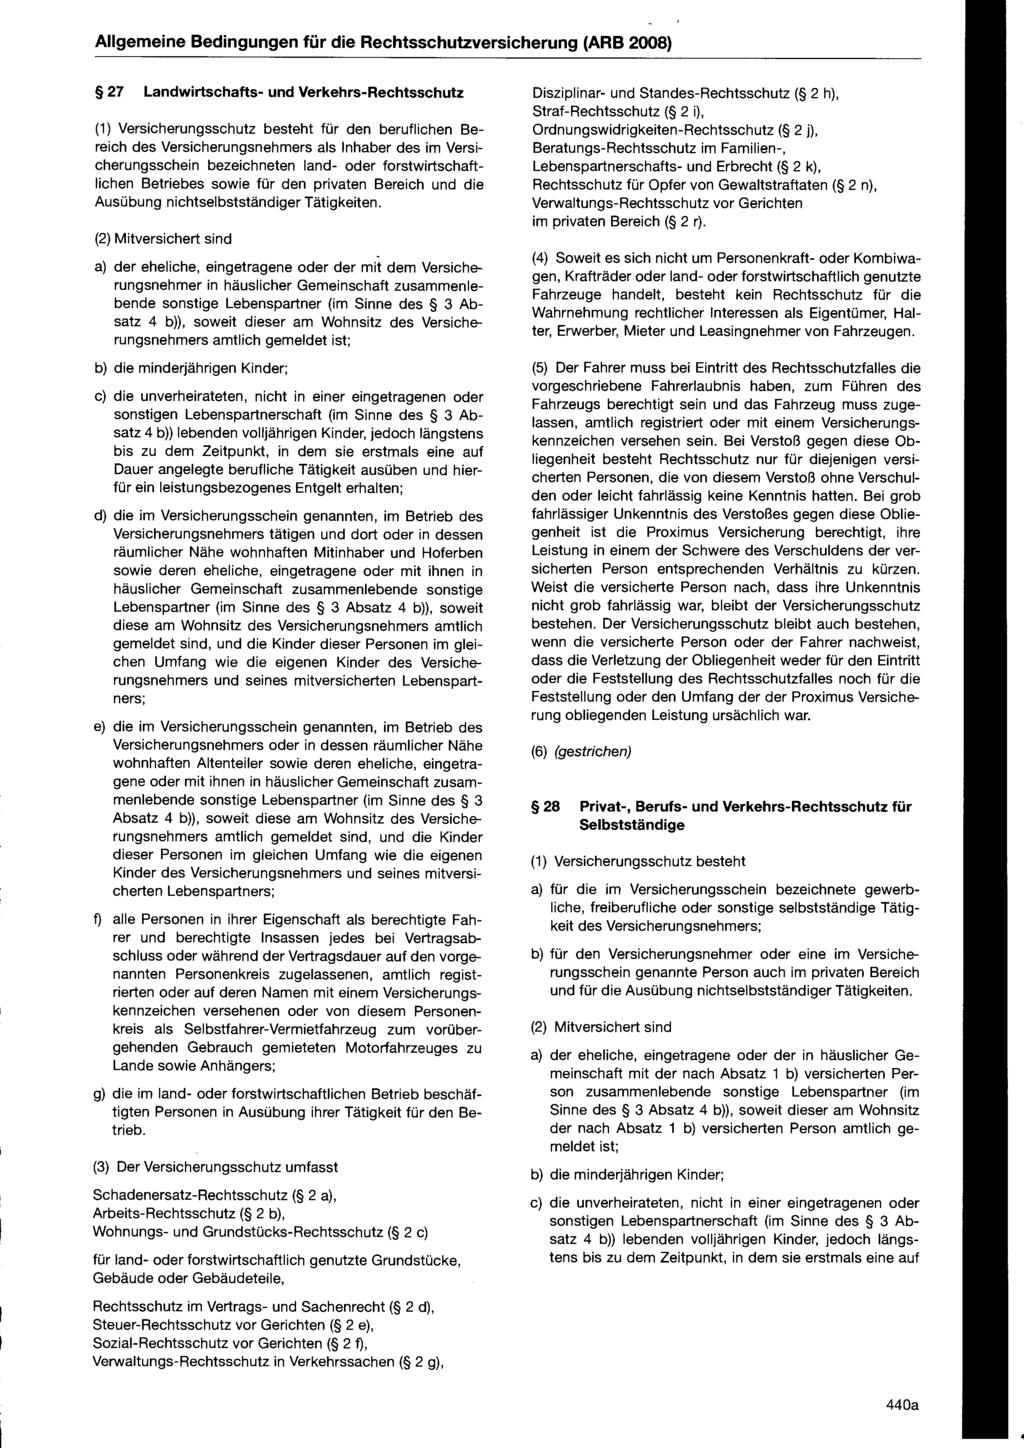 Allgemeine Bedingungen für die Rechtsschutzversicherung (ARB 2008) 27 Landwirtschafts- und Verkehrs-Rechtsschutz (1) Versicherungsschutz besteht für den beruflichen Bereich des Versicherungsnehmers